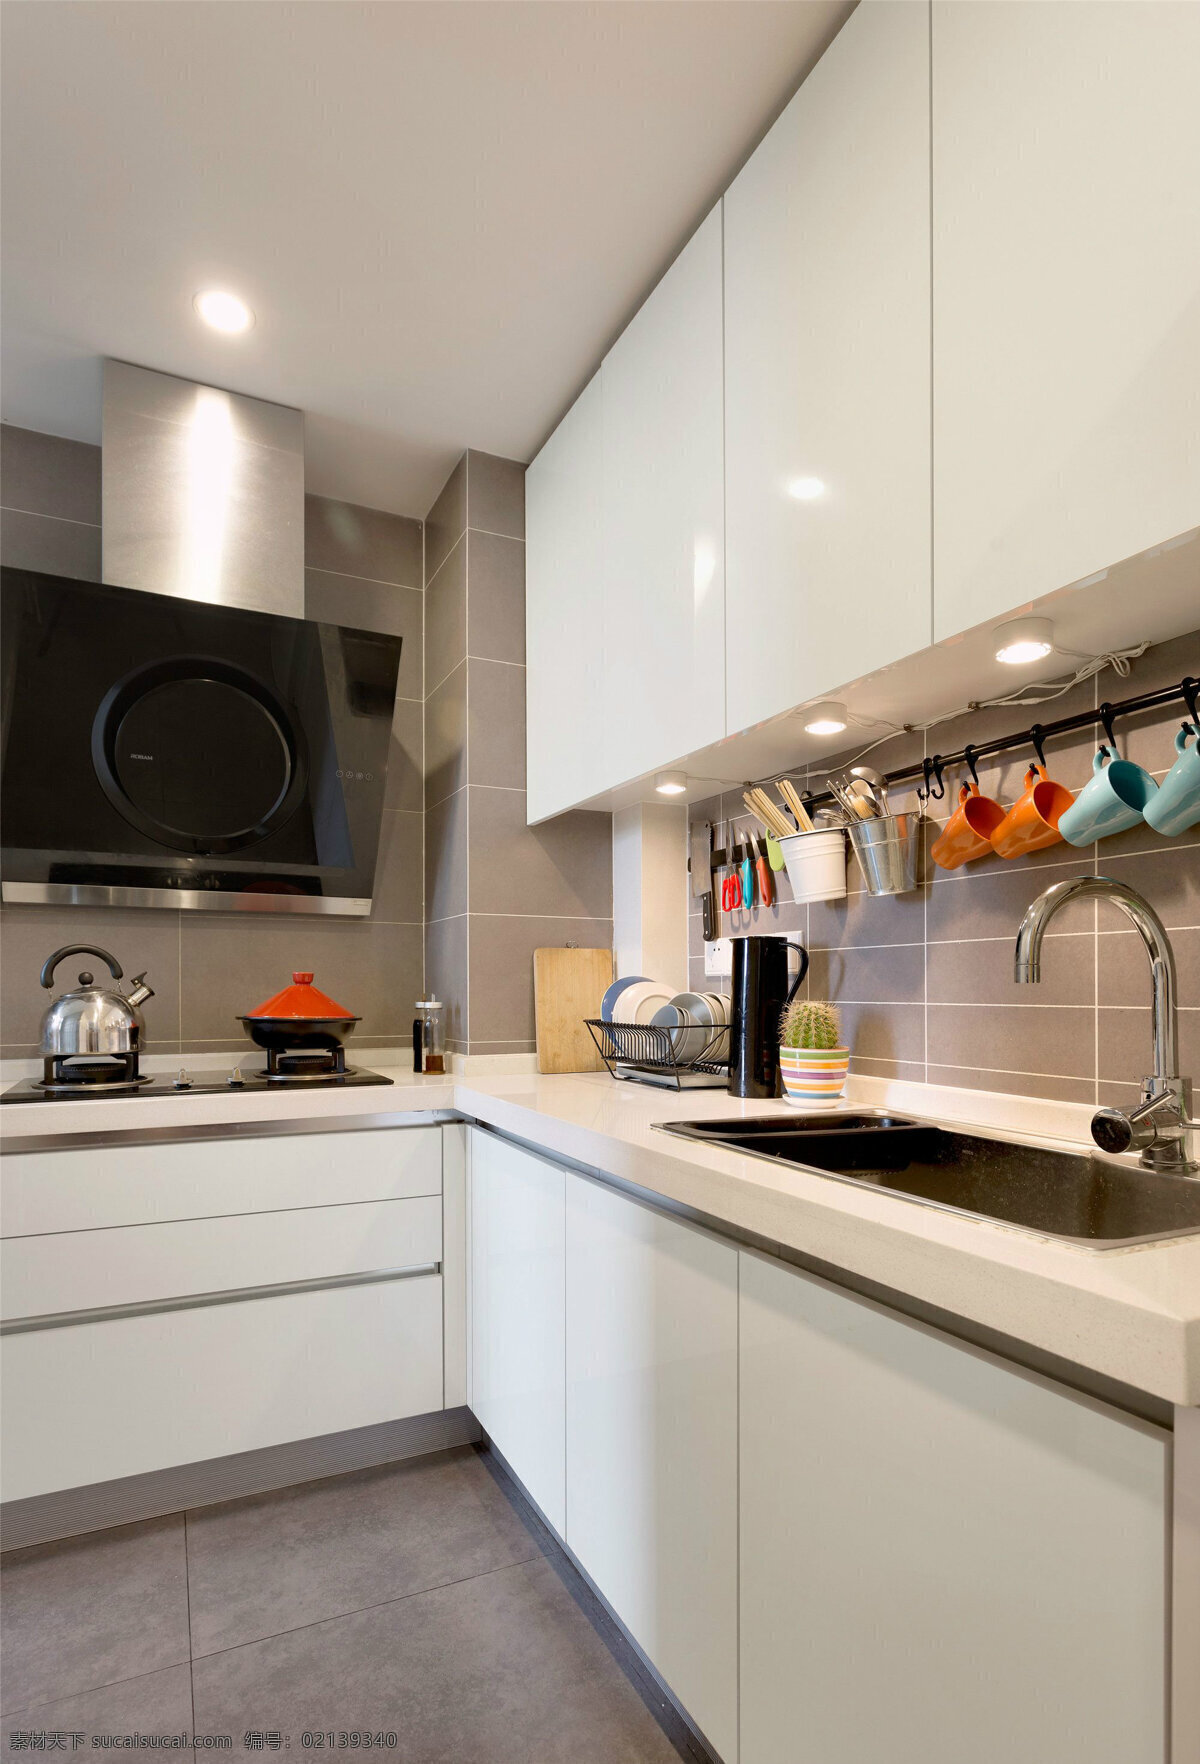 简约 厨房 白色 吊柜 装修 效果图 白色橱柜 灰色地板砖 洗菜盆 灶具